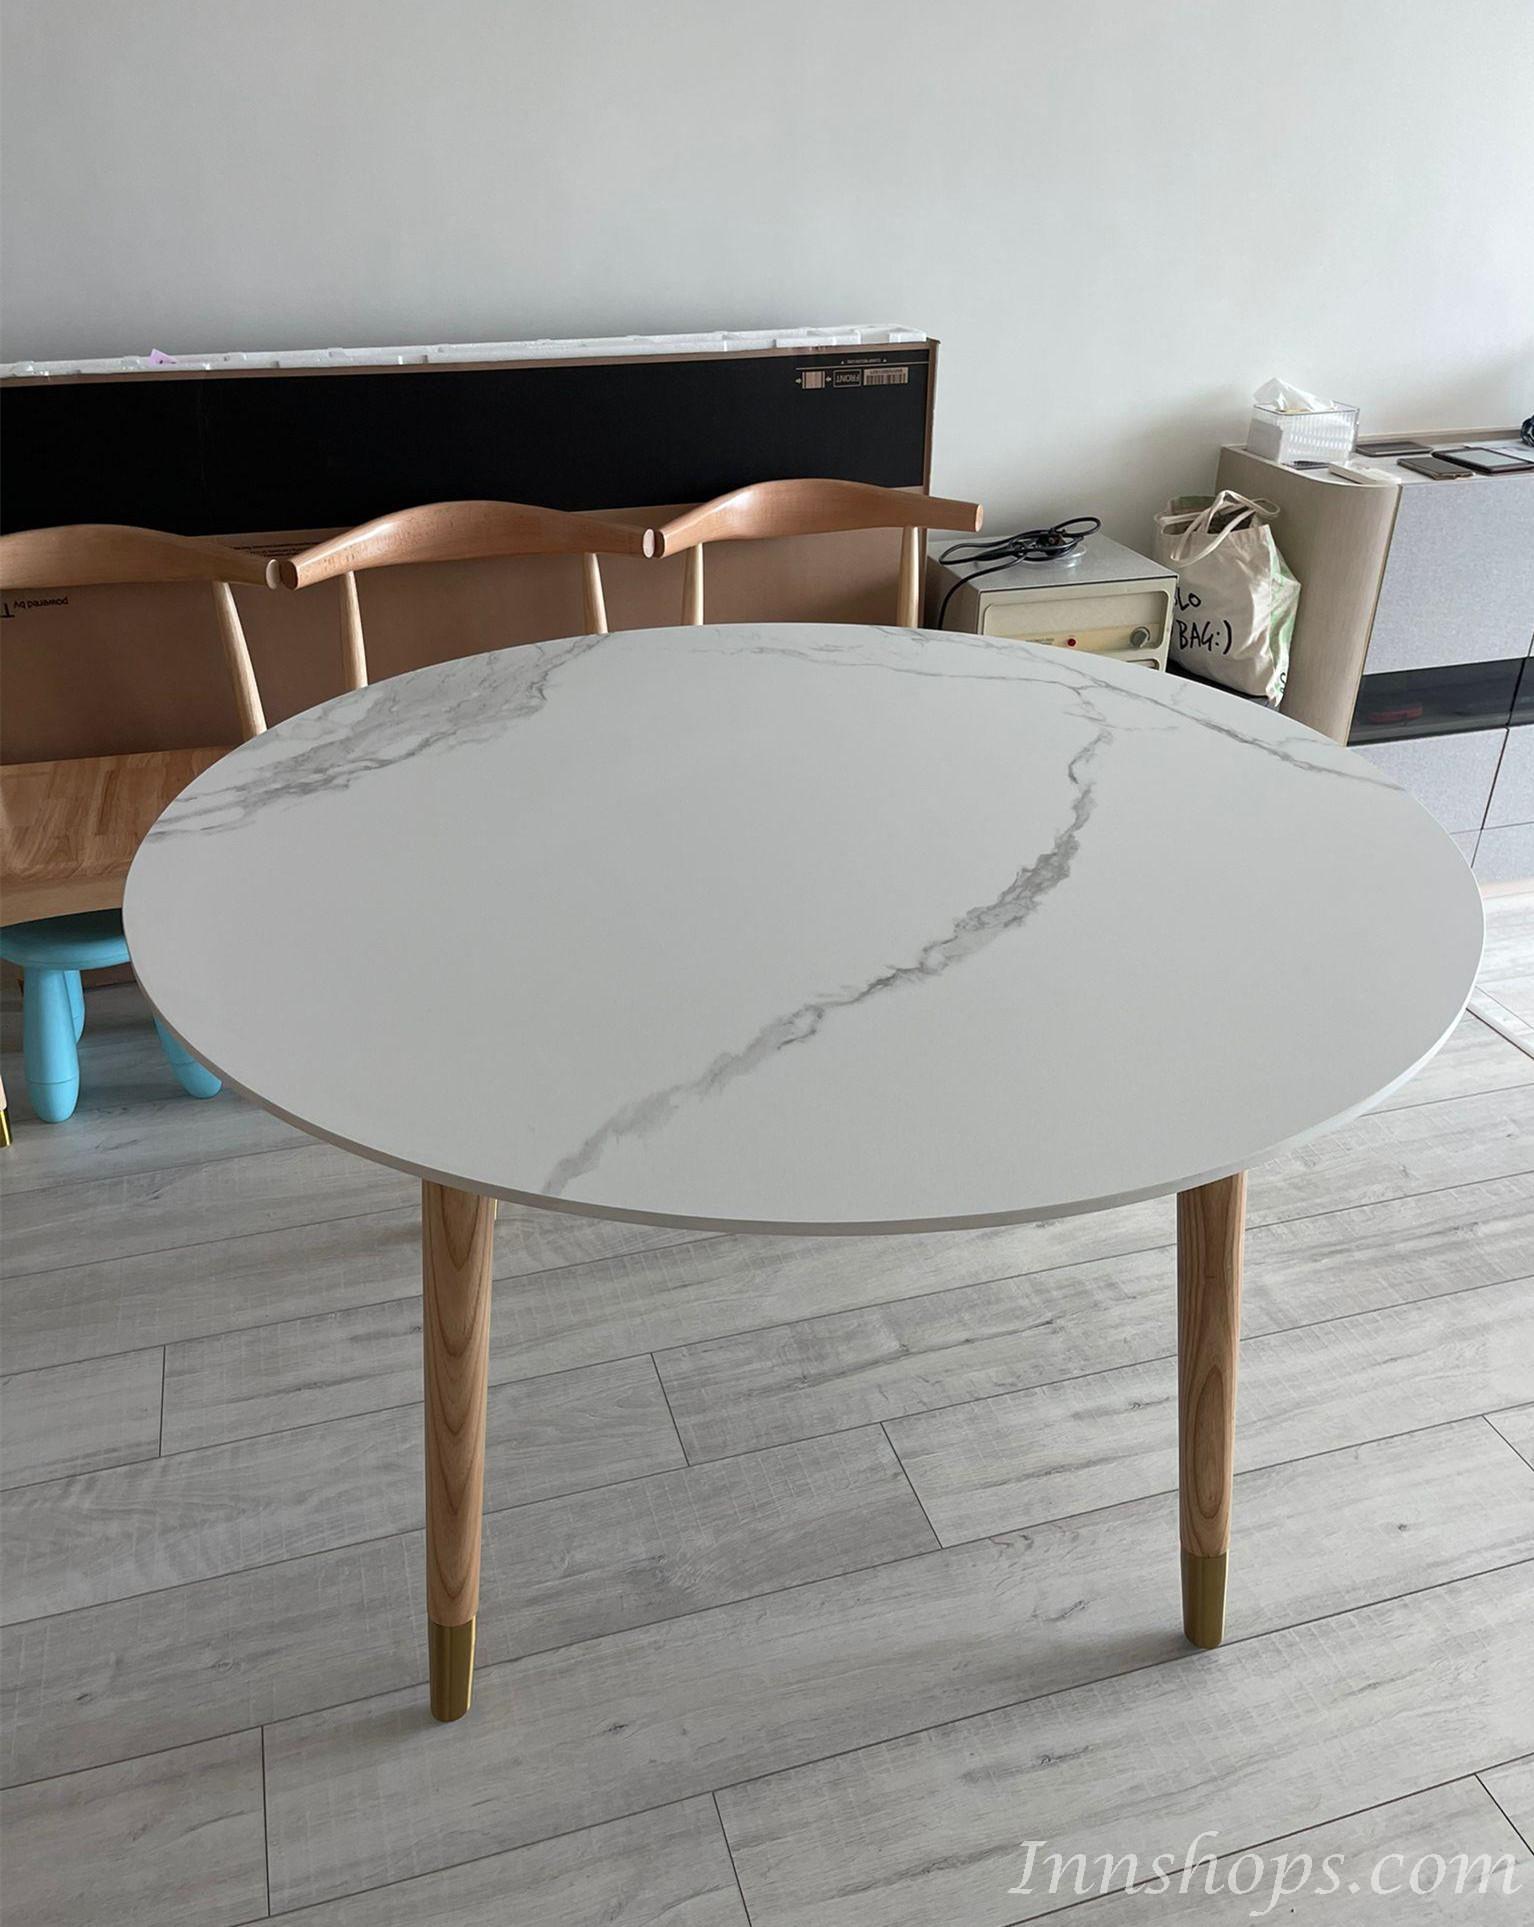 北歐實木白蠟木 實木圓桌岩板圓形餐桌轉盤120/130cm(IS8214)